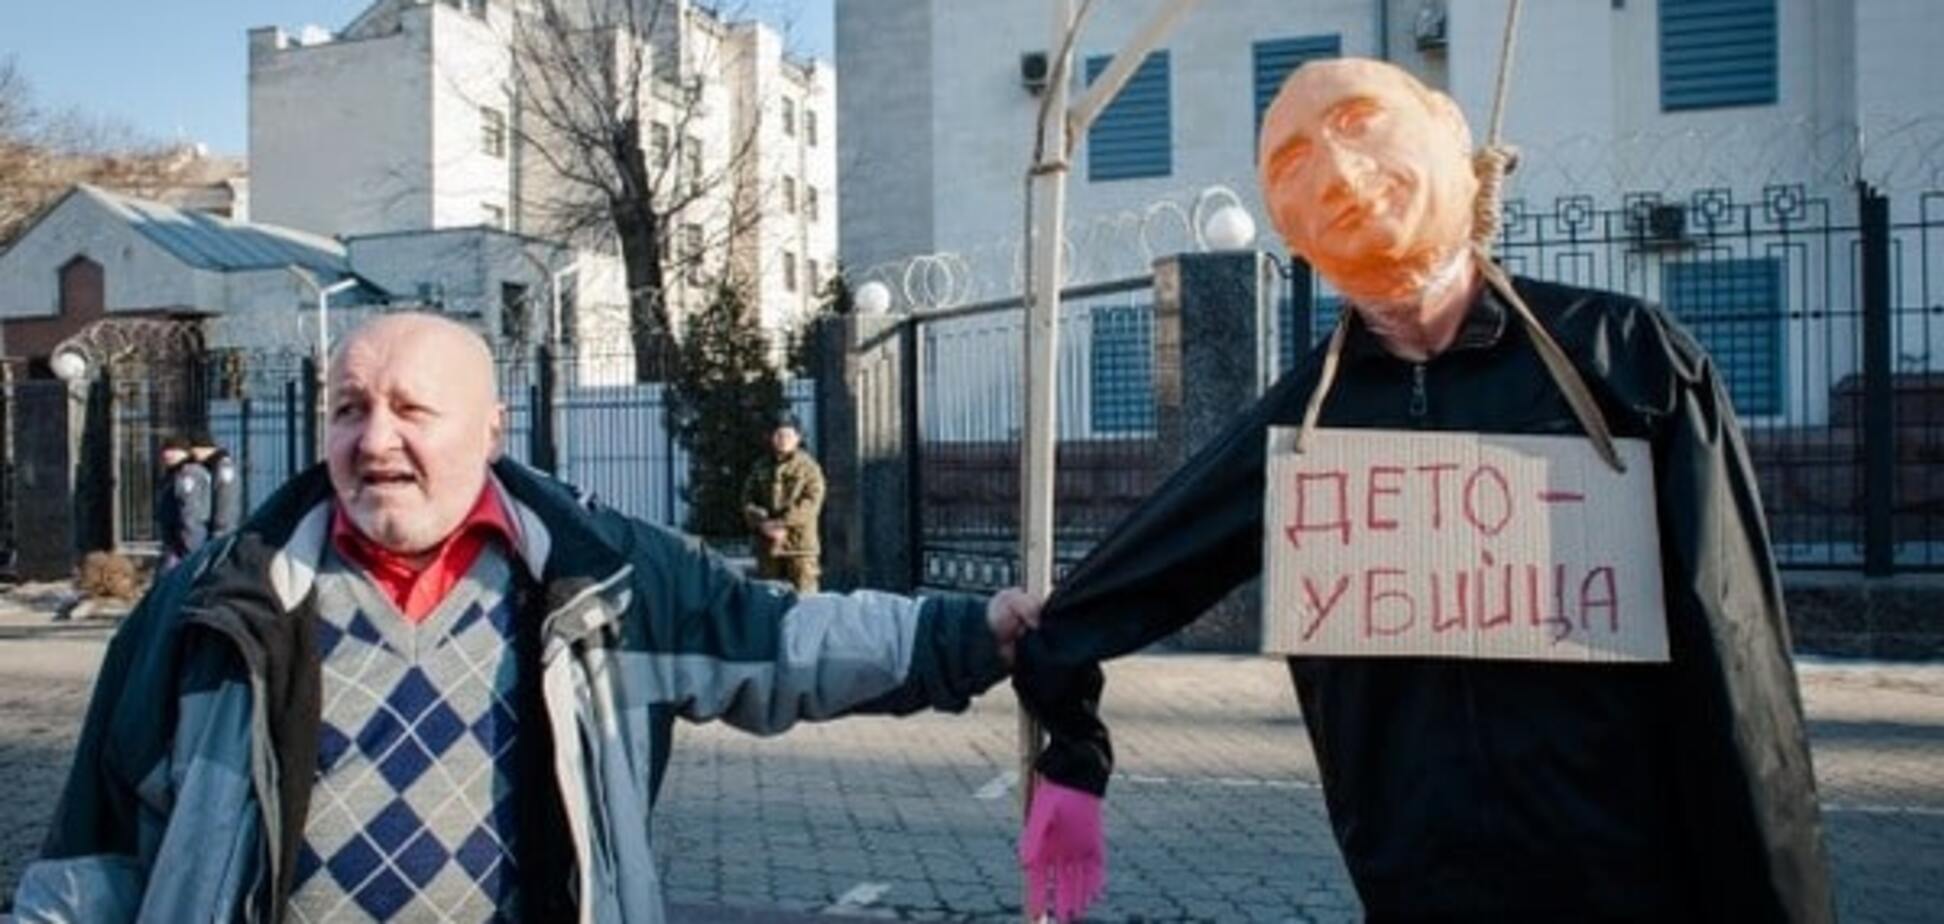 Біля посольства Росії в Києві повісили 'Путіна'